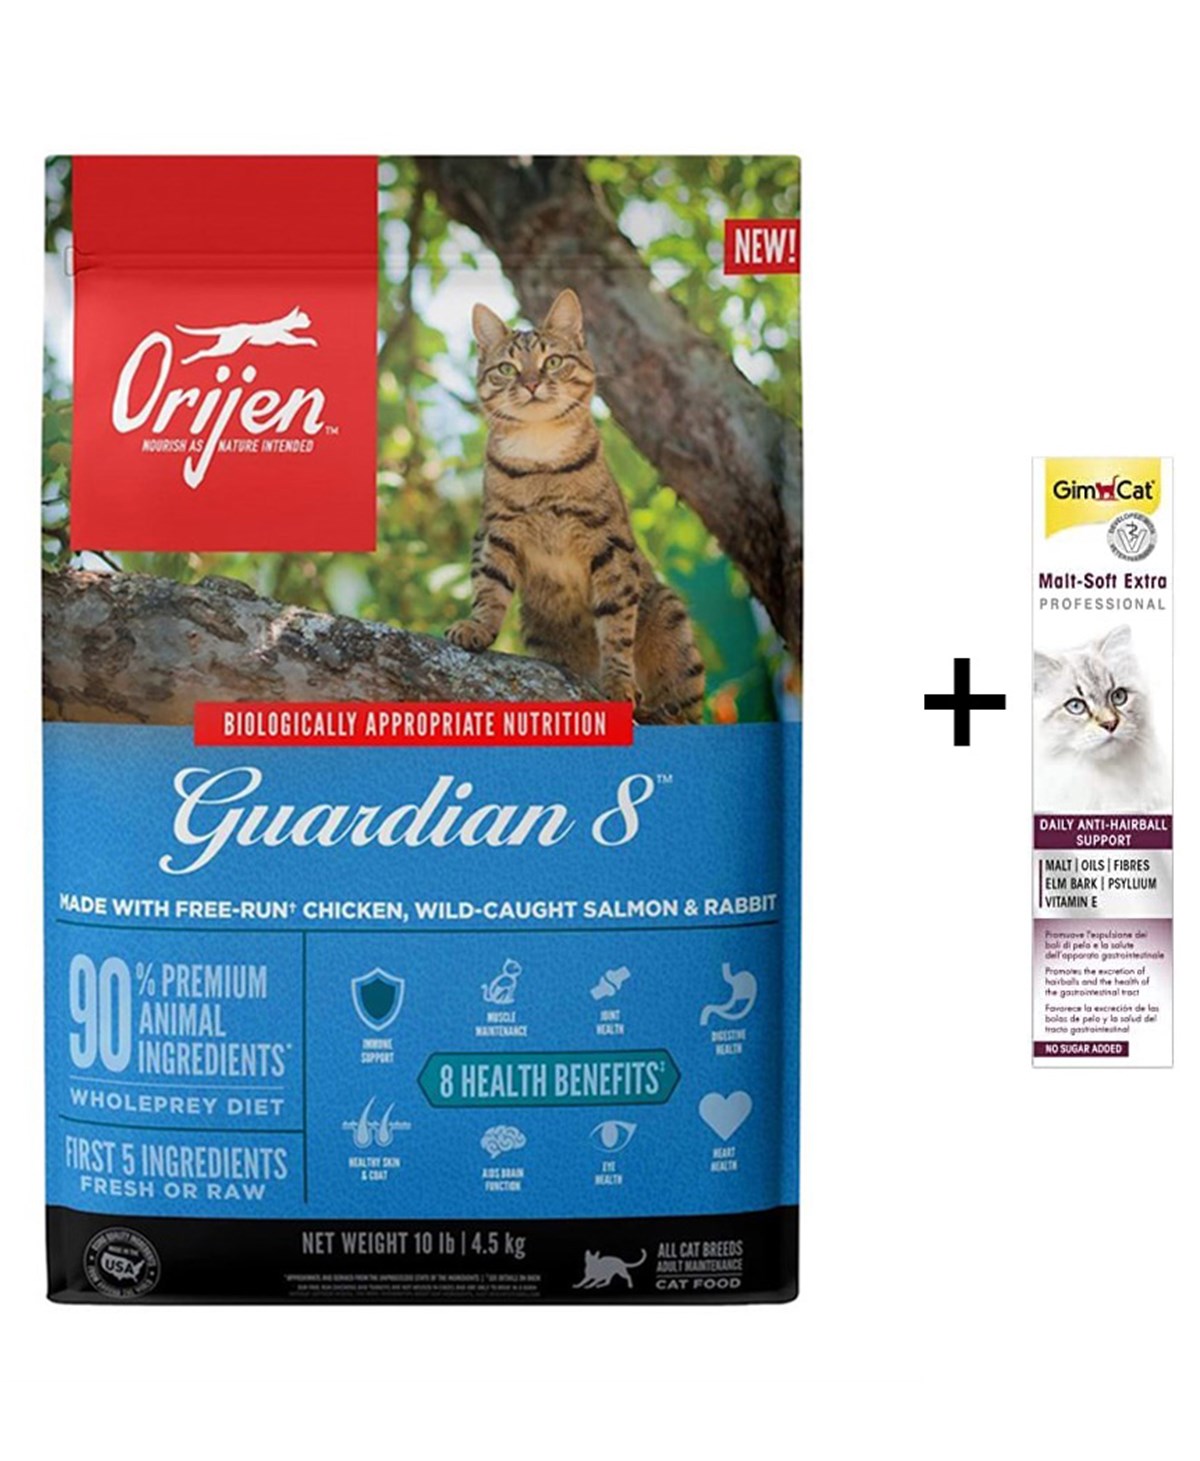 Orijen Guardian 8 Tahılsız Yetişkin Kedi Maması 1.8 Kg (Gimcat Malt Extra  100 g) | ZooPet